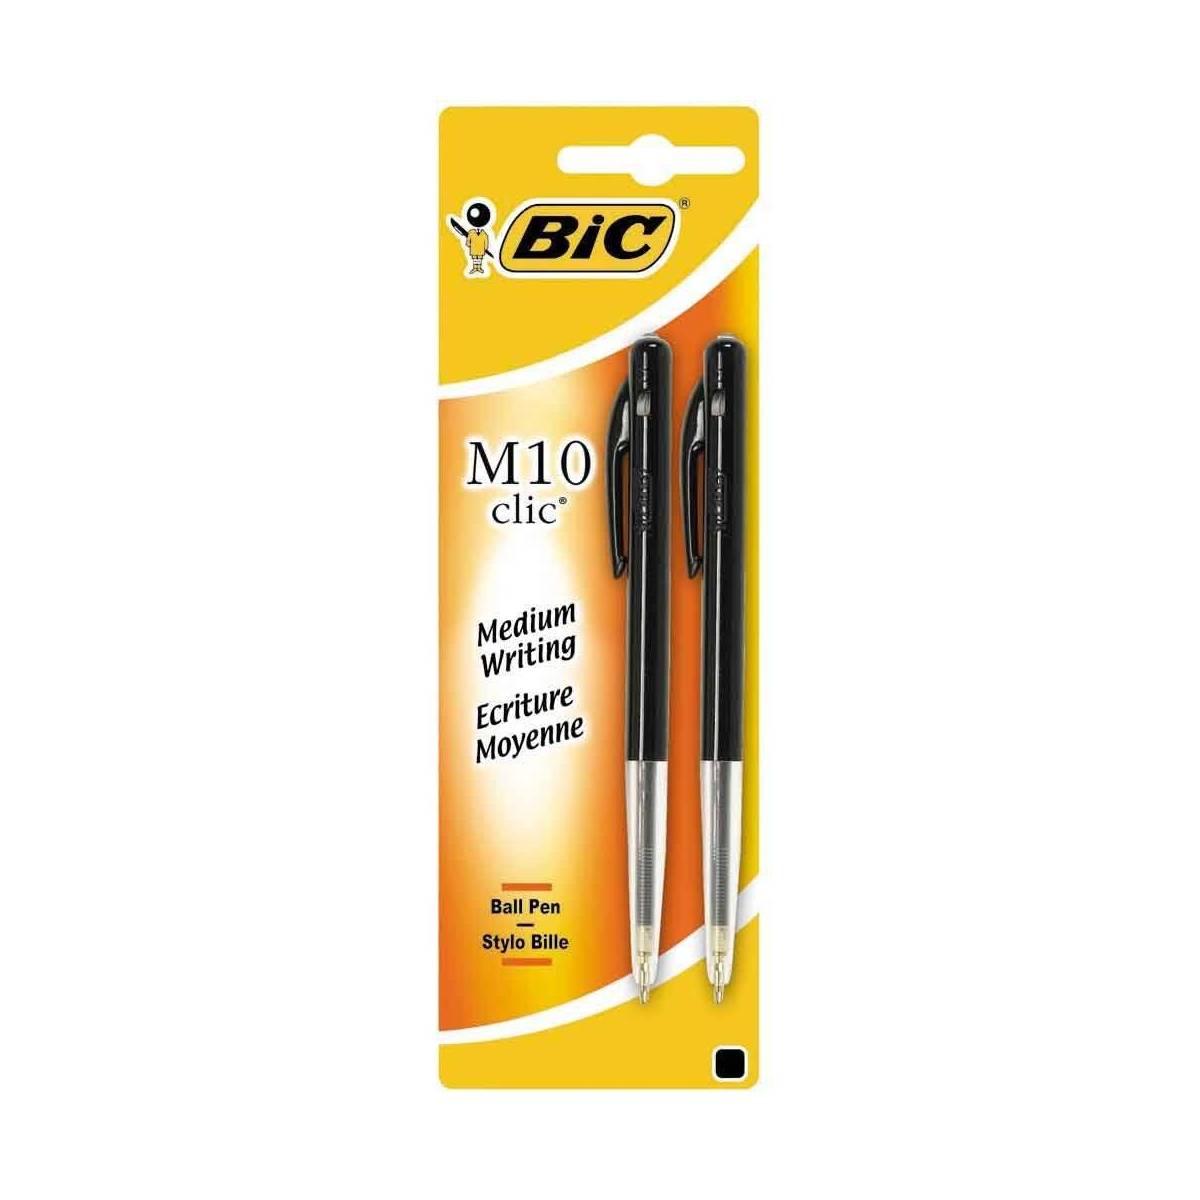 BIC - Lot de 2 Stylos Bille M10 Clic - Noir